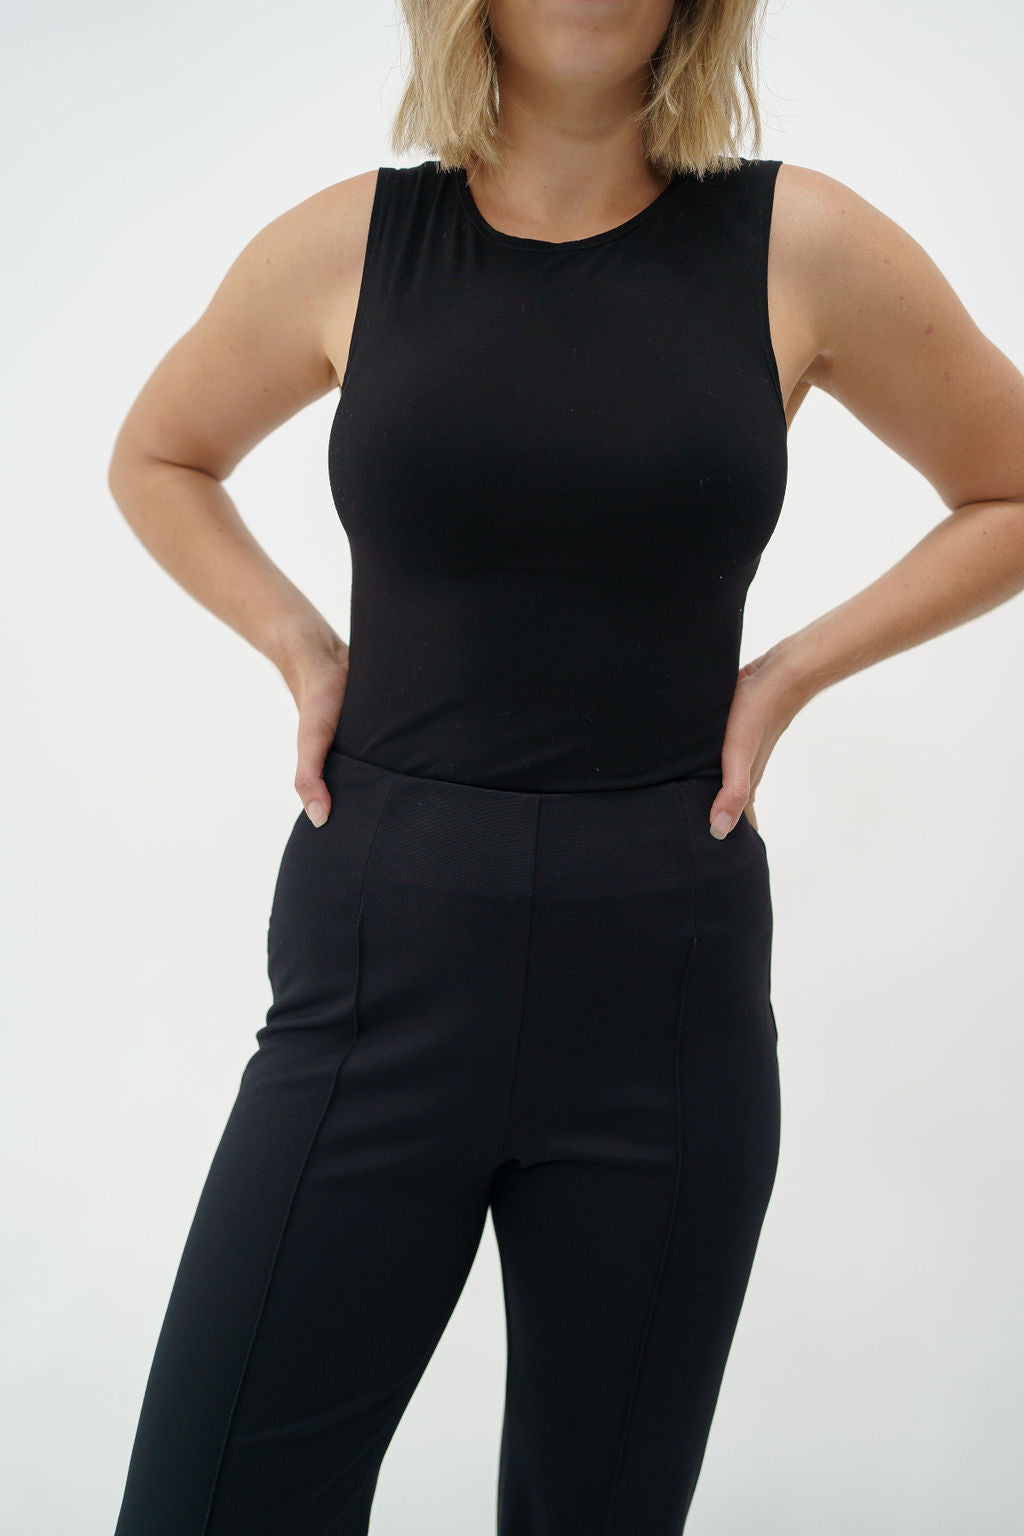 bodysuit for tall women